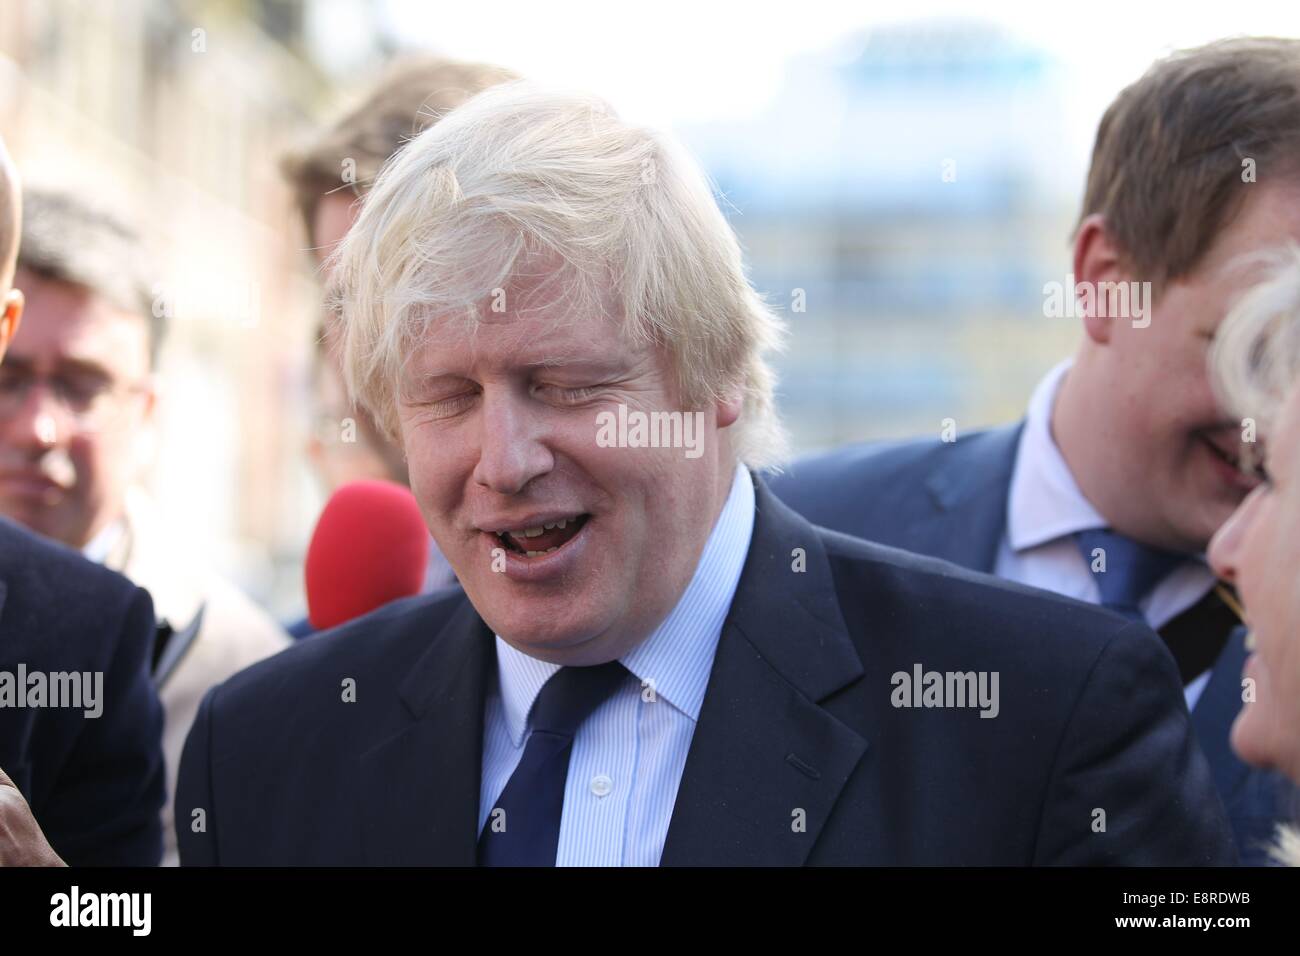 Boris Johnson lasciando la sua promozione di fluidi tracciabili in Harrow per prendere un treno. Dotato di: Boris Johnson dove: Londra, Regno Unito quando: 10 Apr 2014 Foto Stock